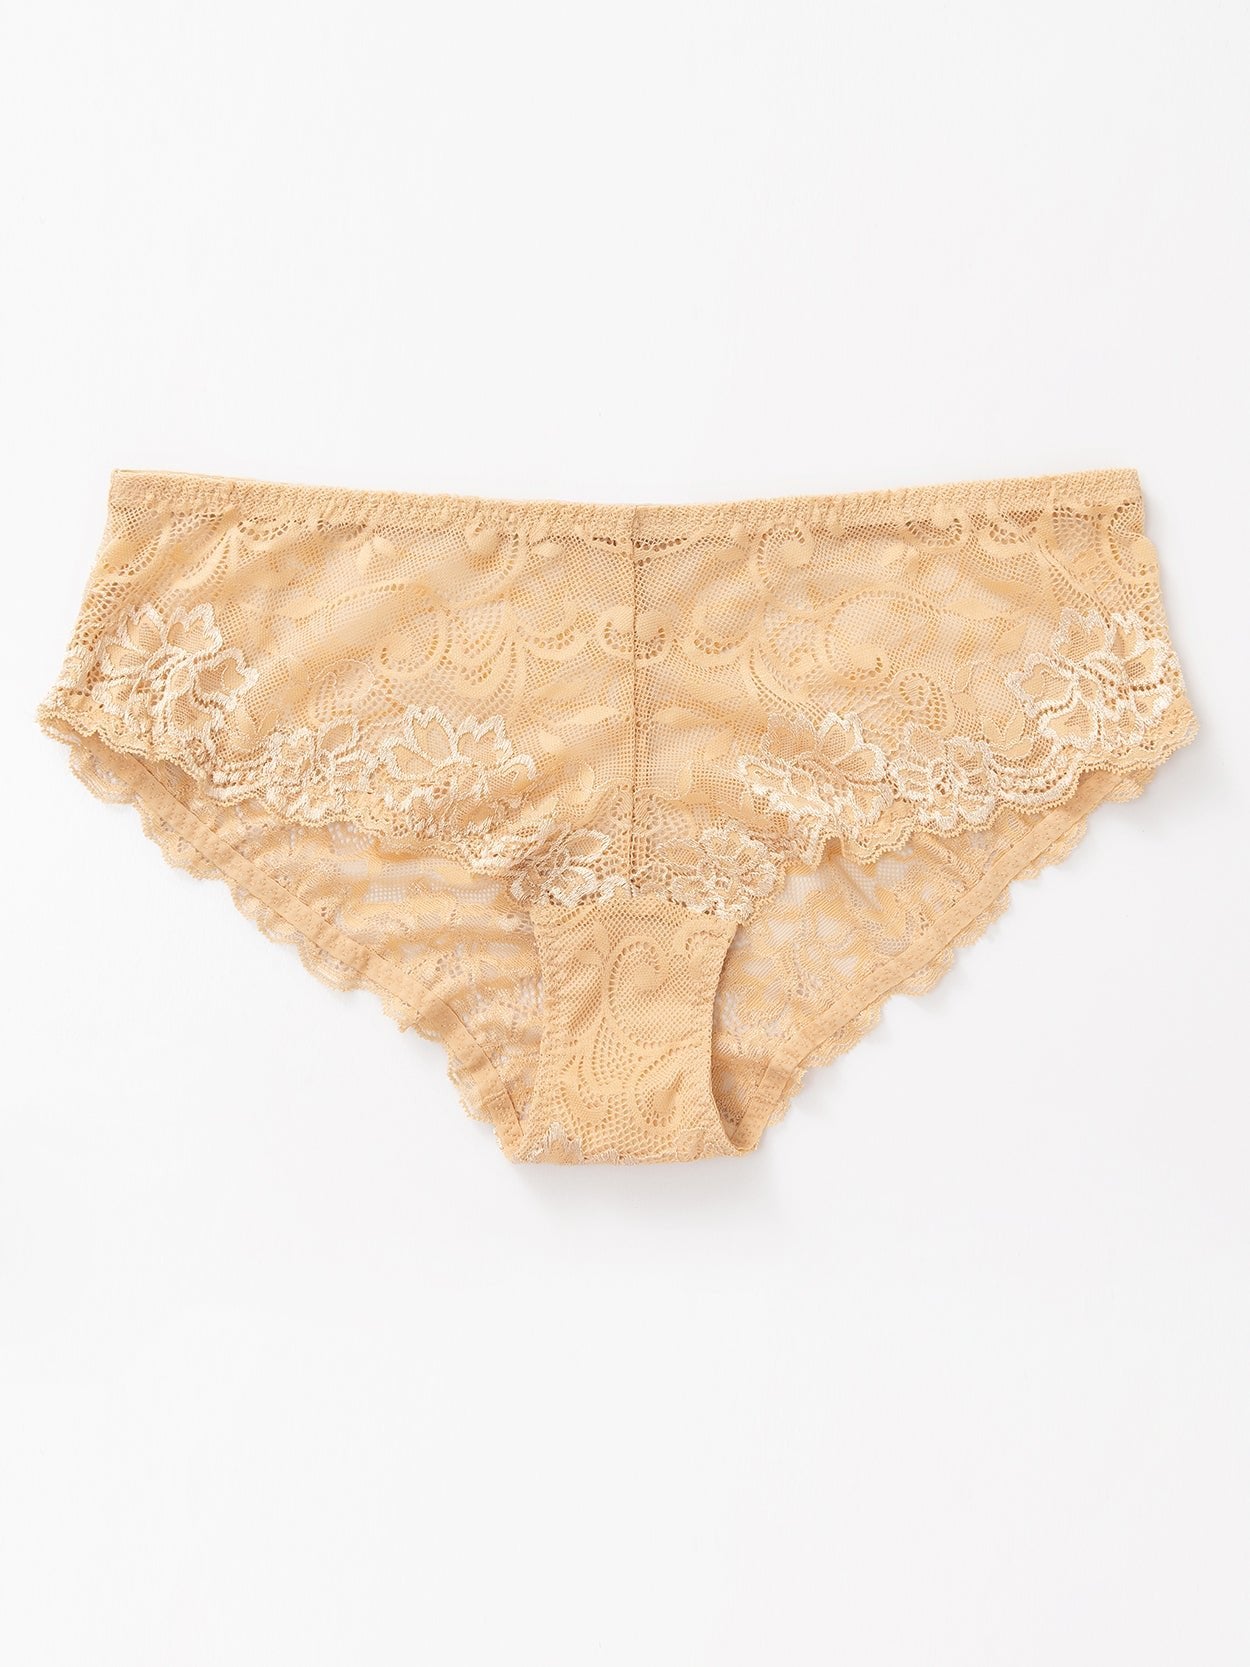 Cotton Lace Mesh Plus Size Panties 4 PCS Nude